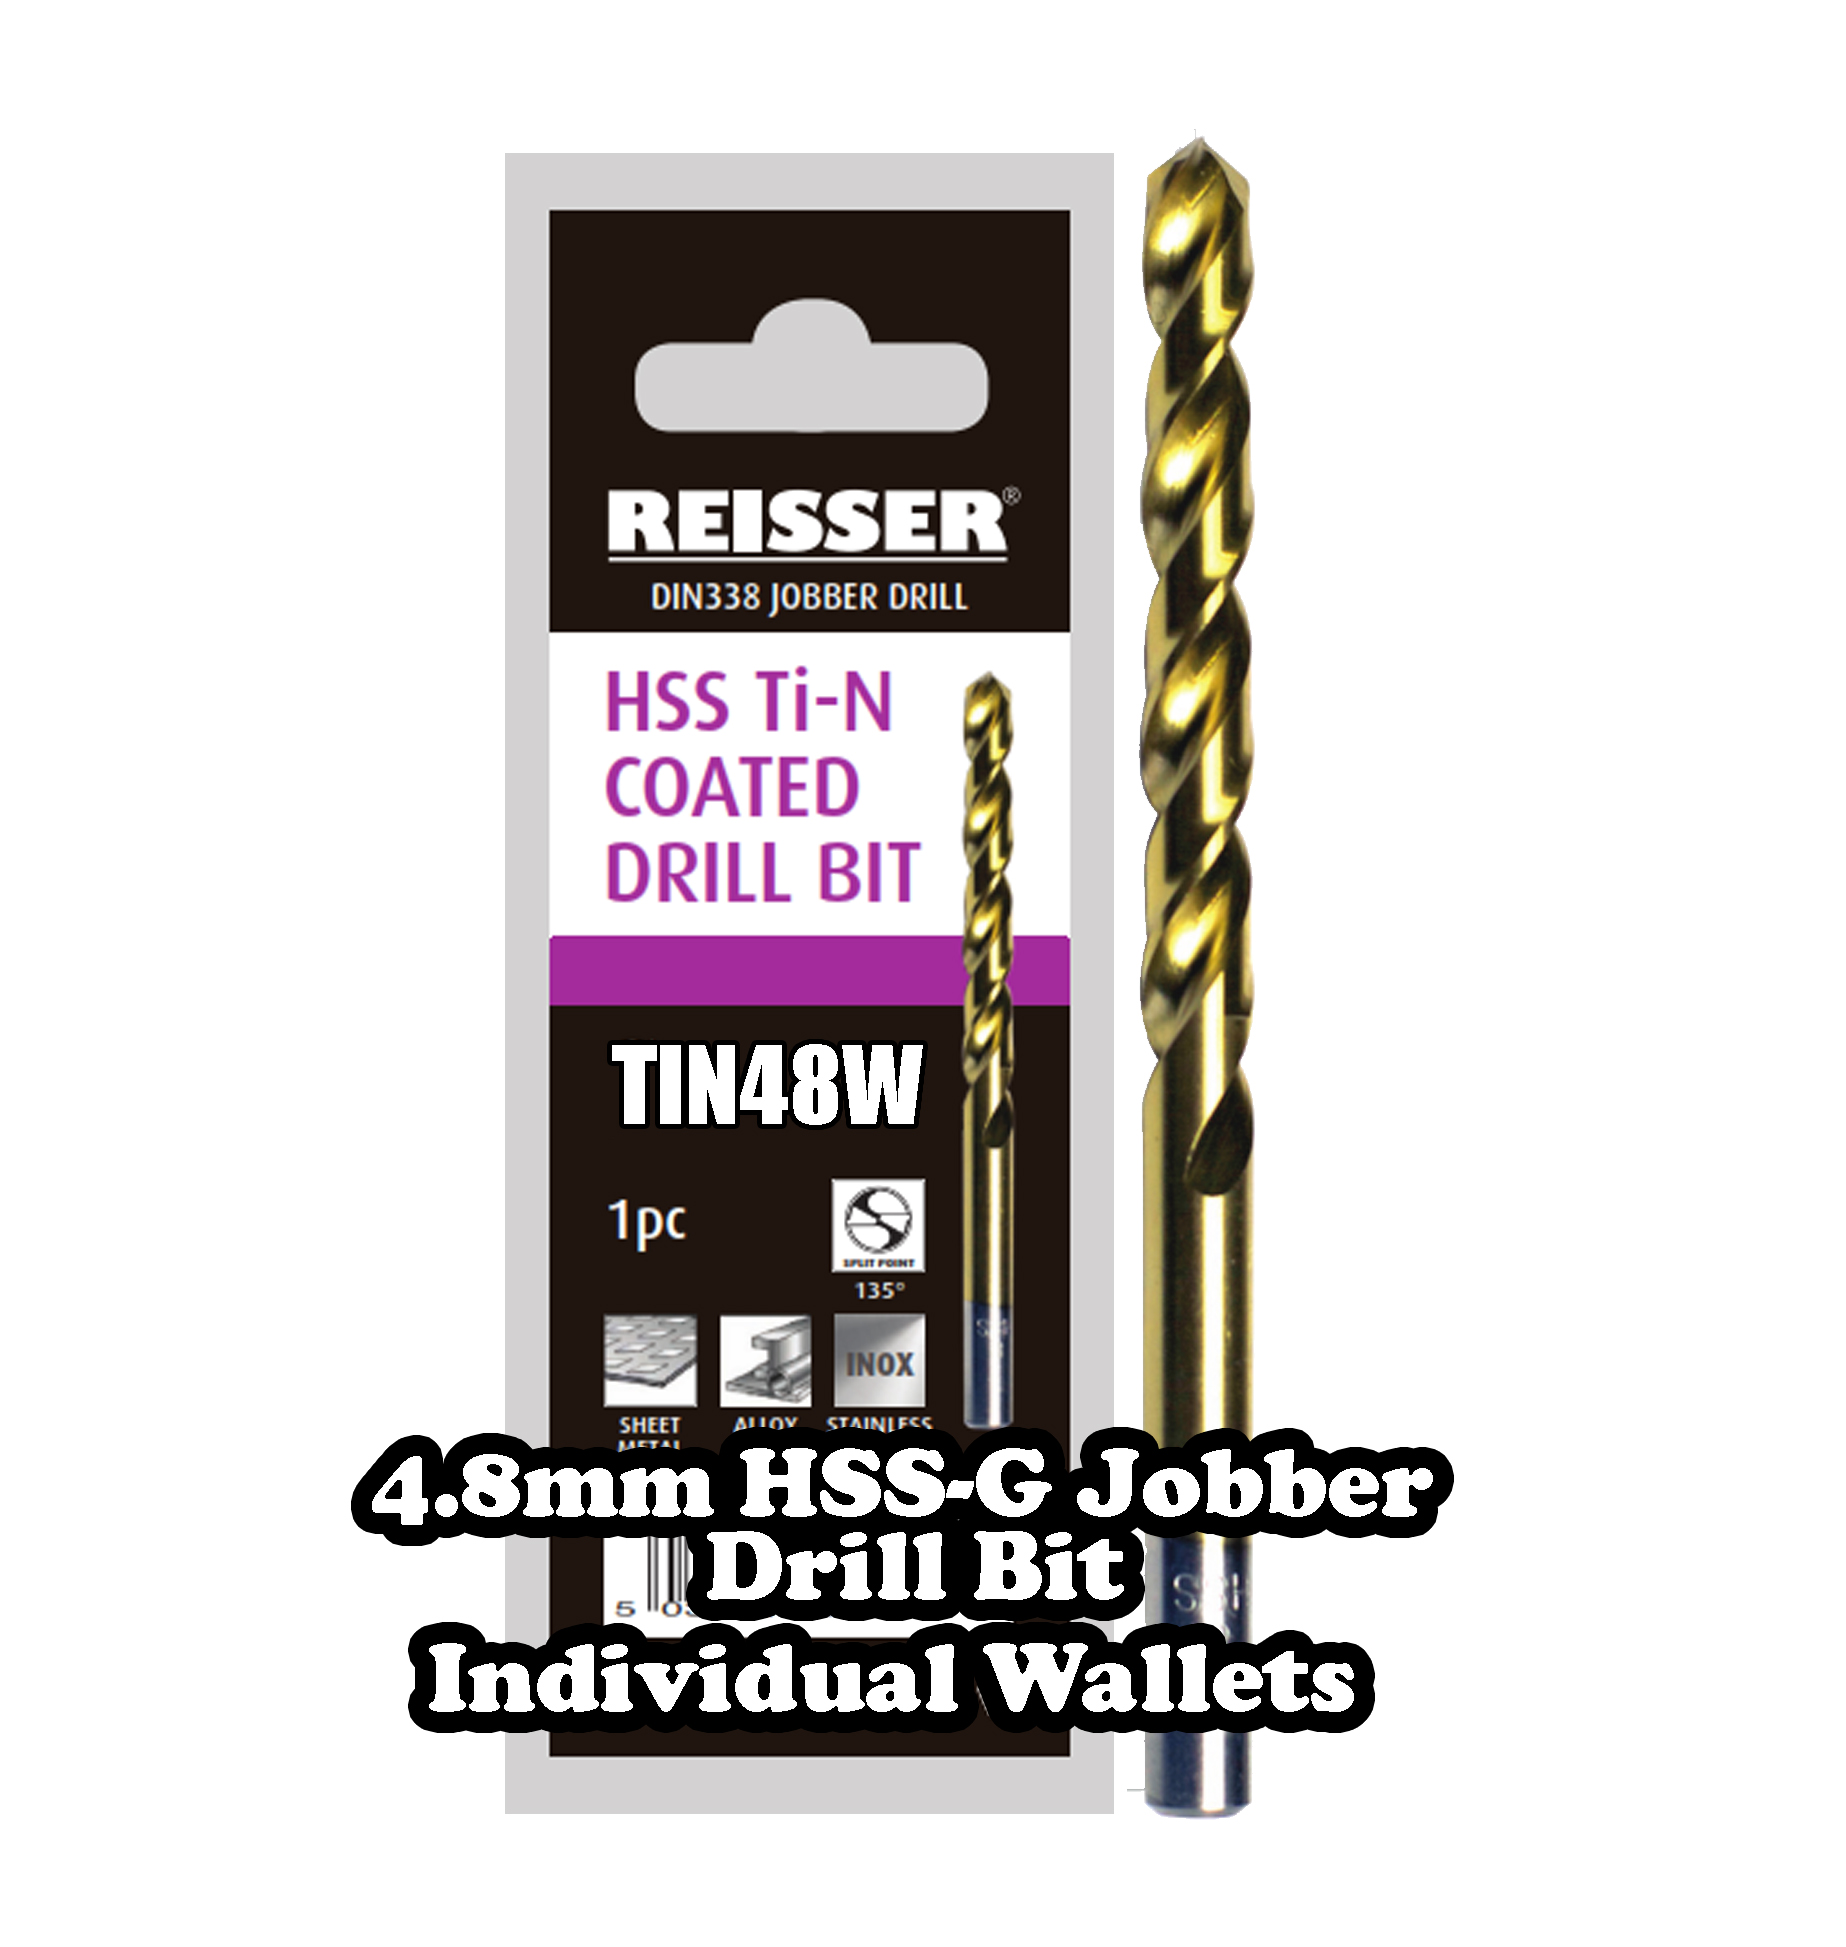 4.8mm HSS Jobber Drill Bit (SINGLE WALLET)